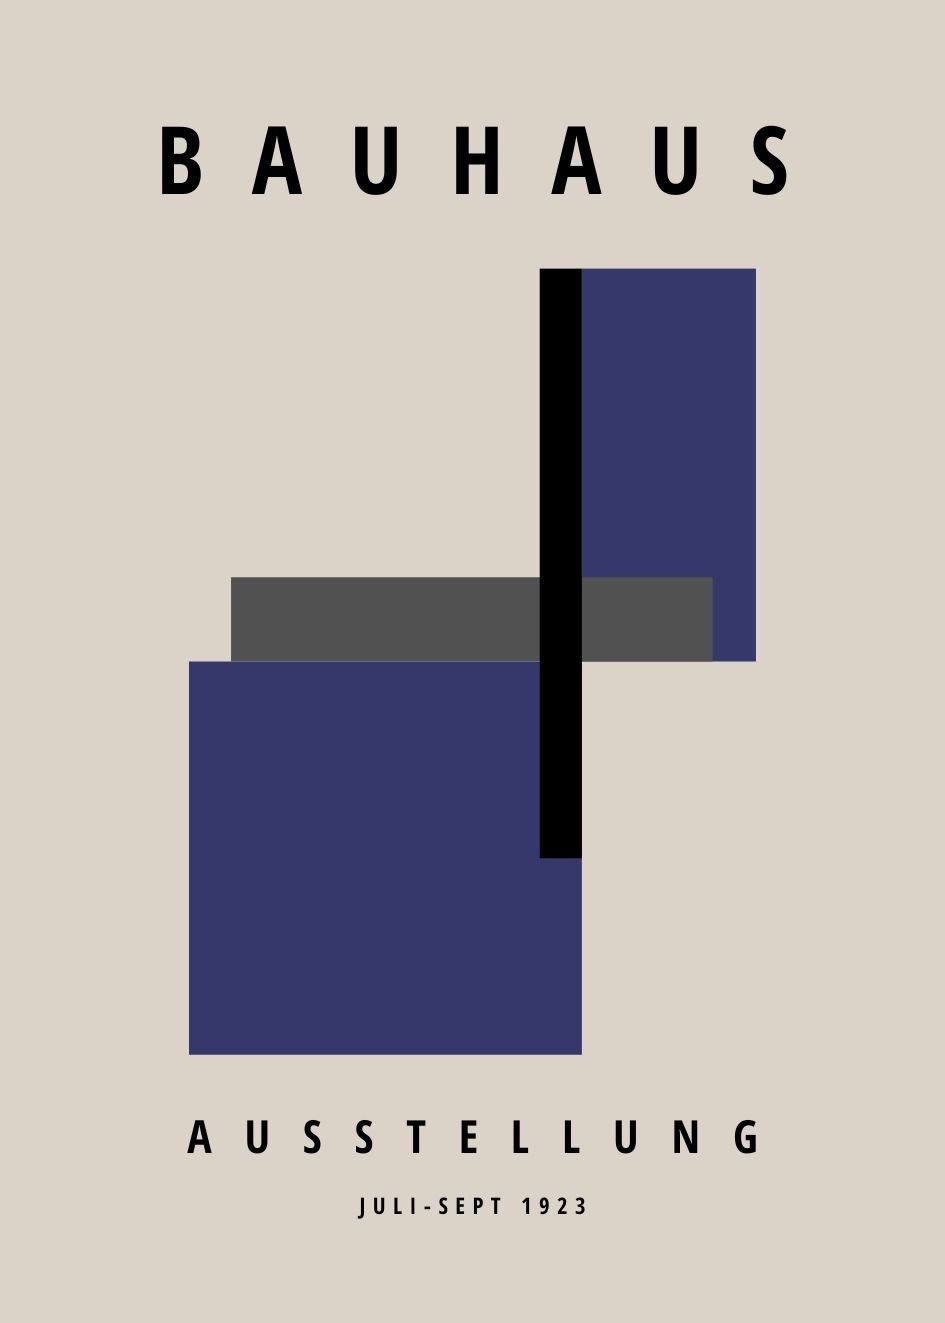 Bauhaus Poster №.106